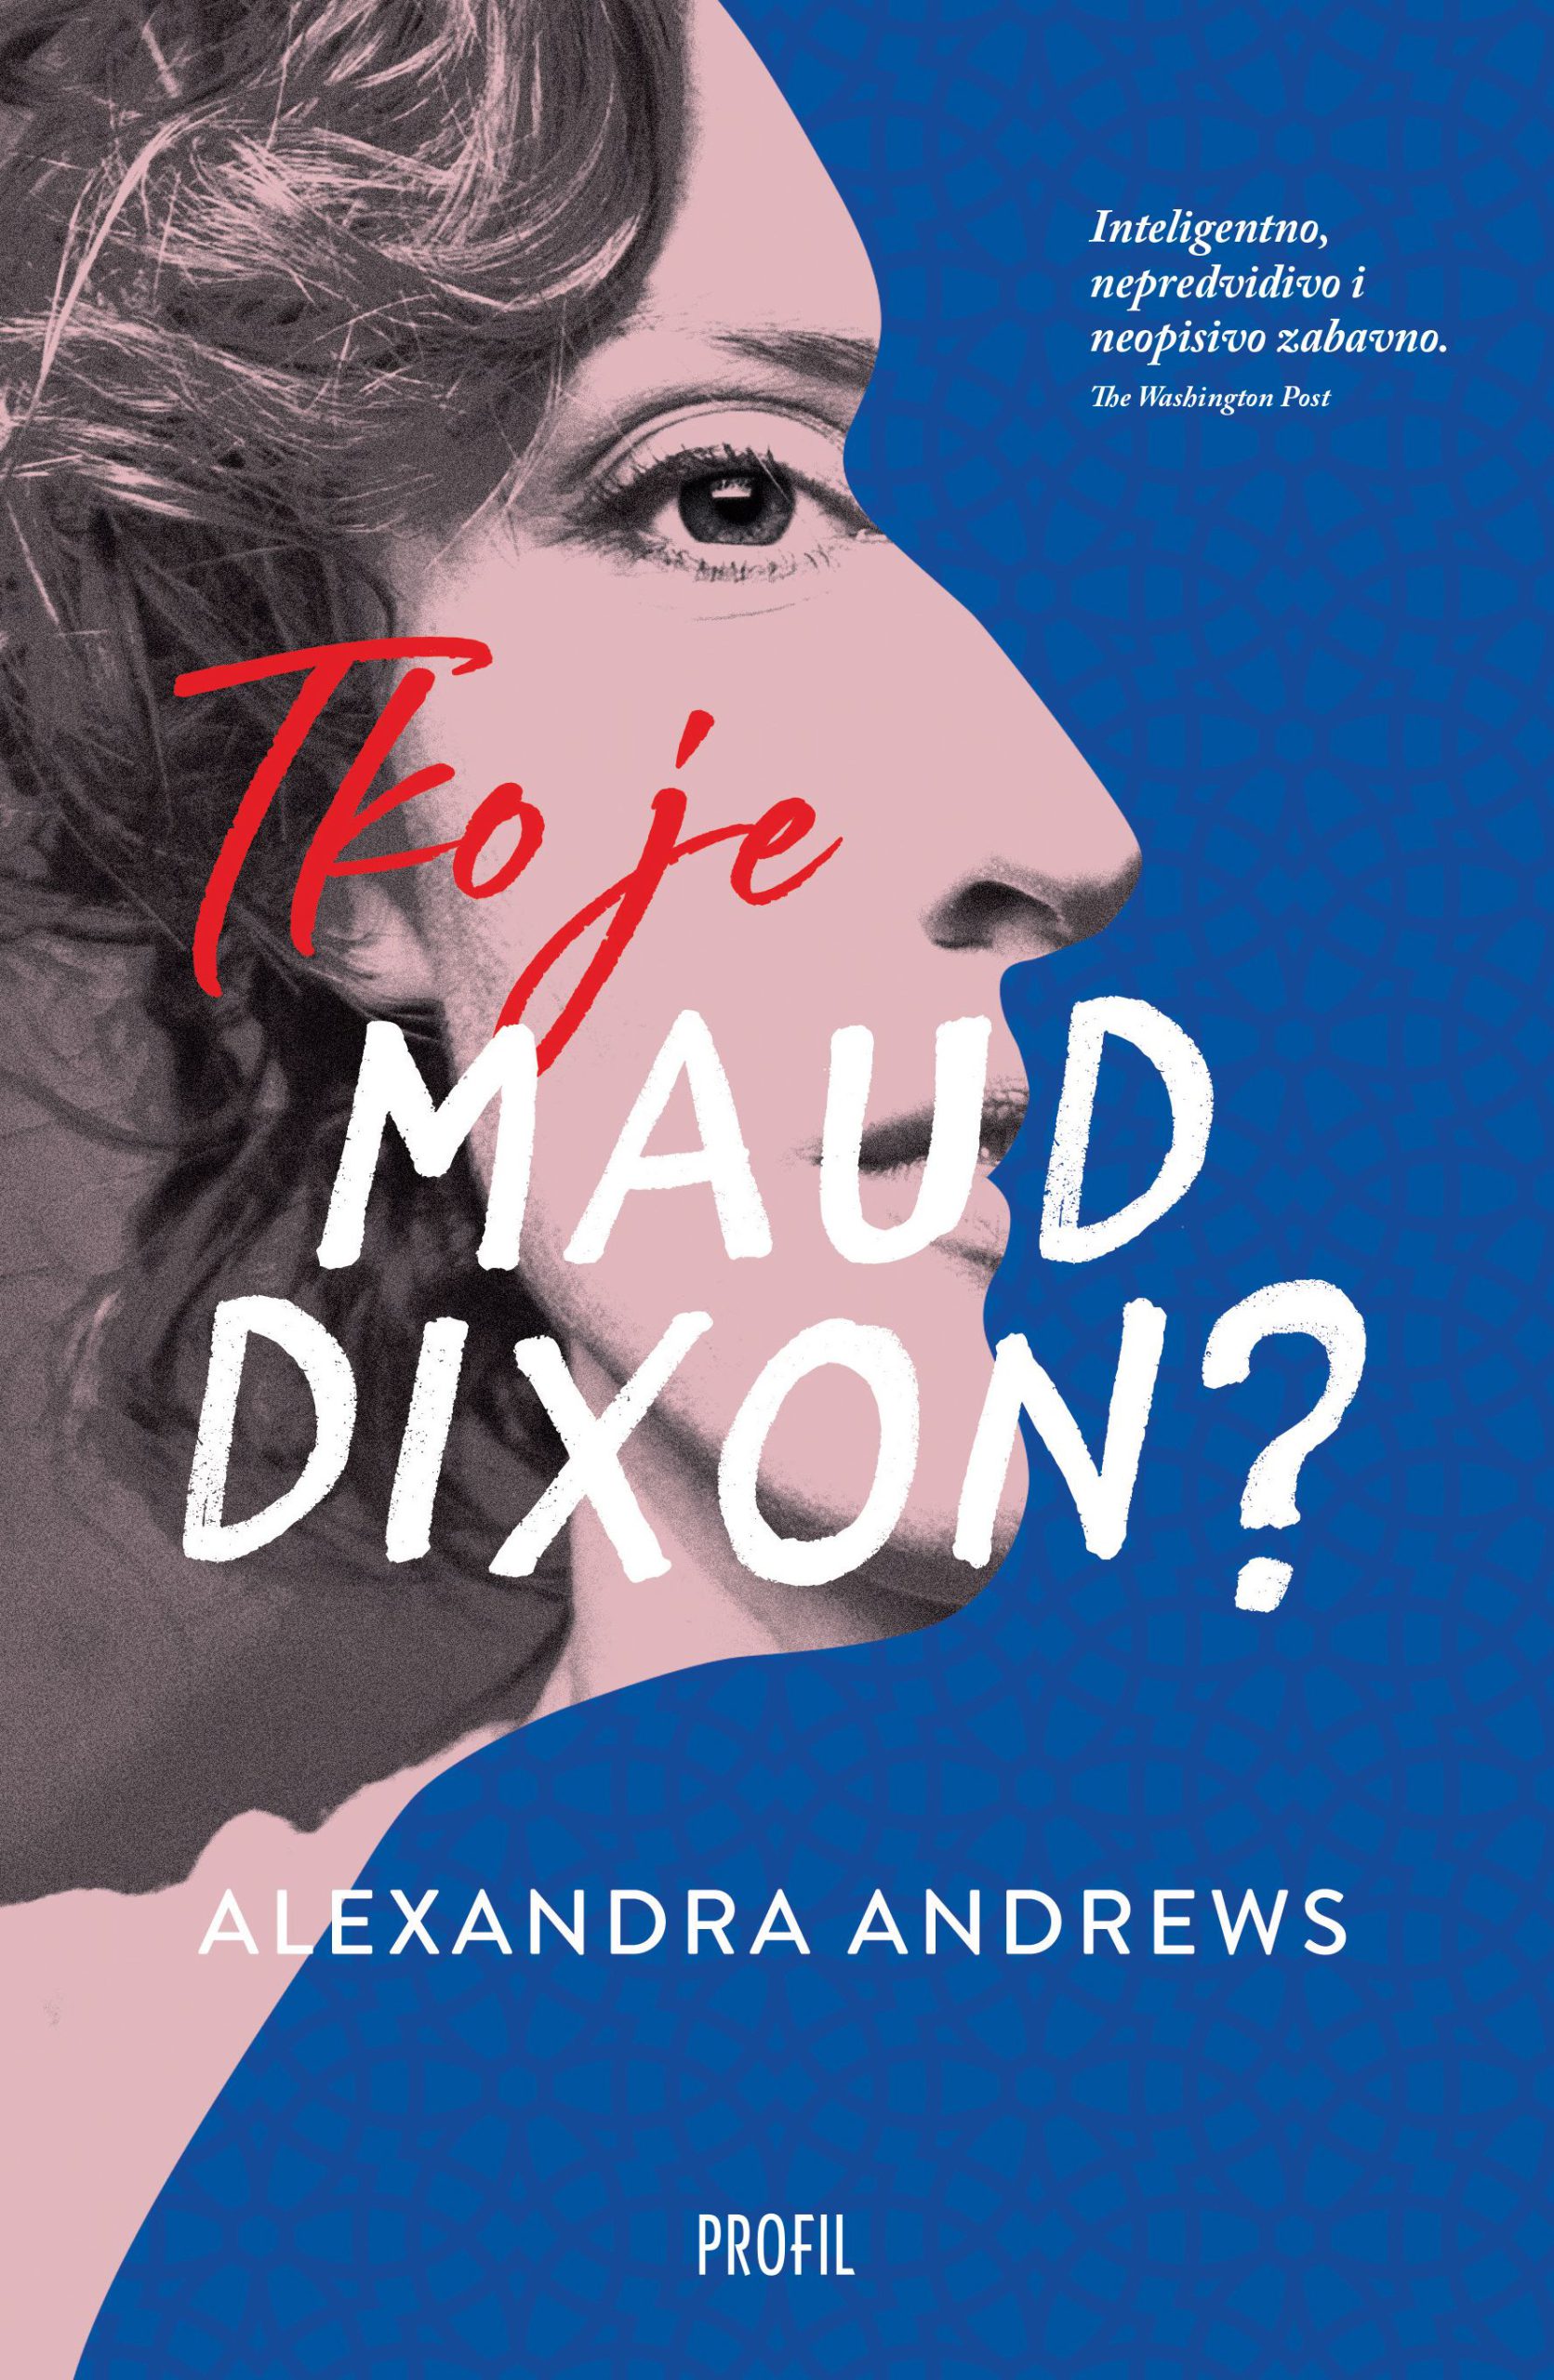 Tko je Maud Dixon?